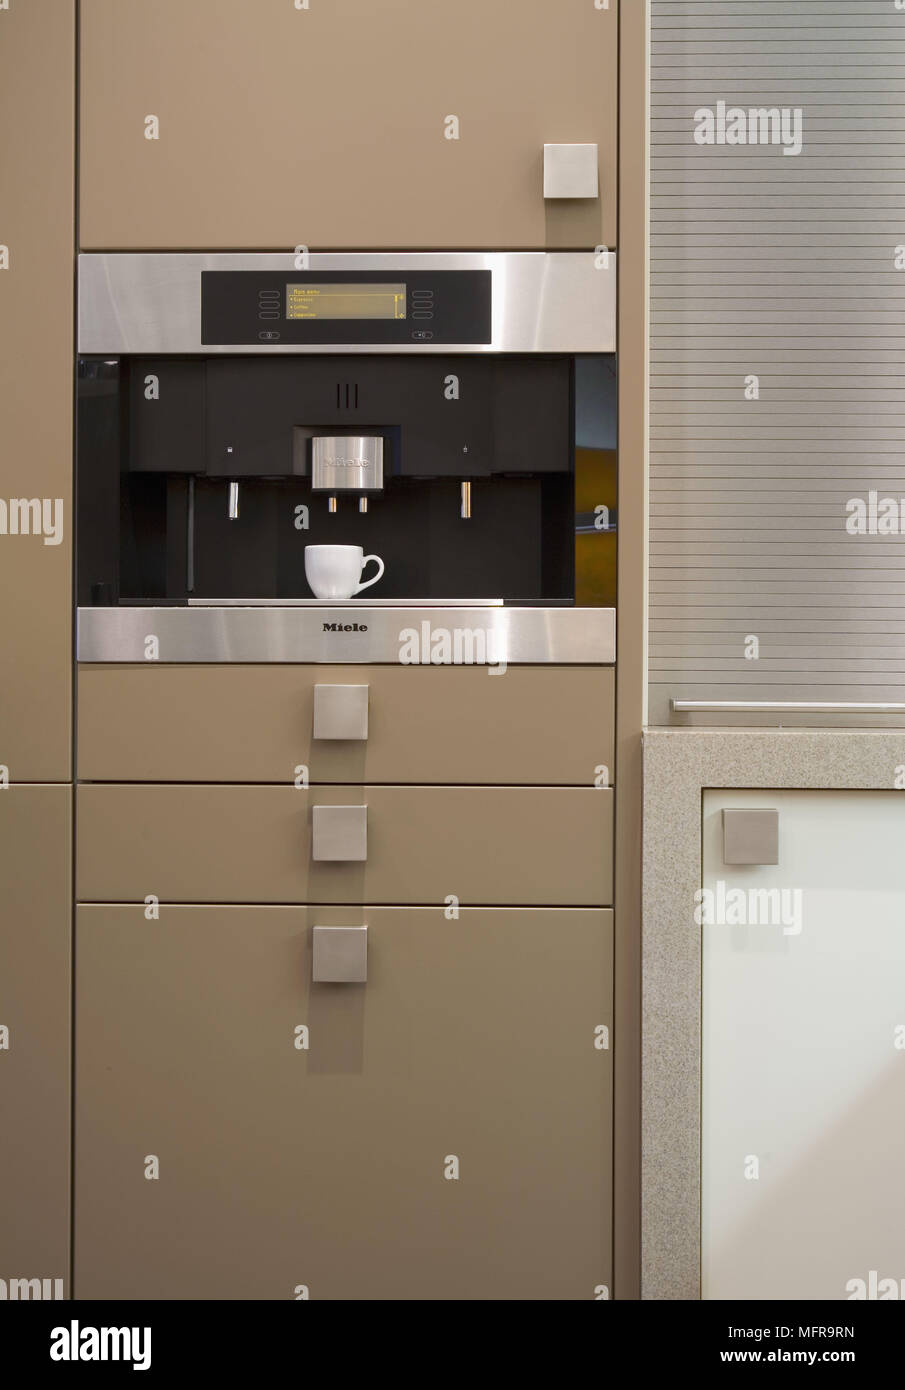 Integrierte Kaffeemaschine in der modernen Küche Einheiten Stockfotografie  - Alamy